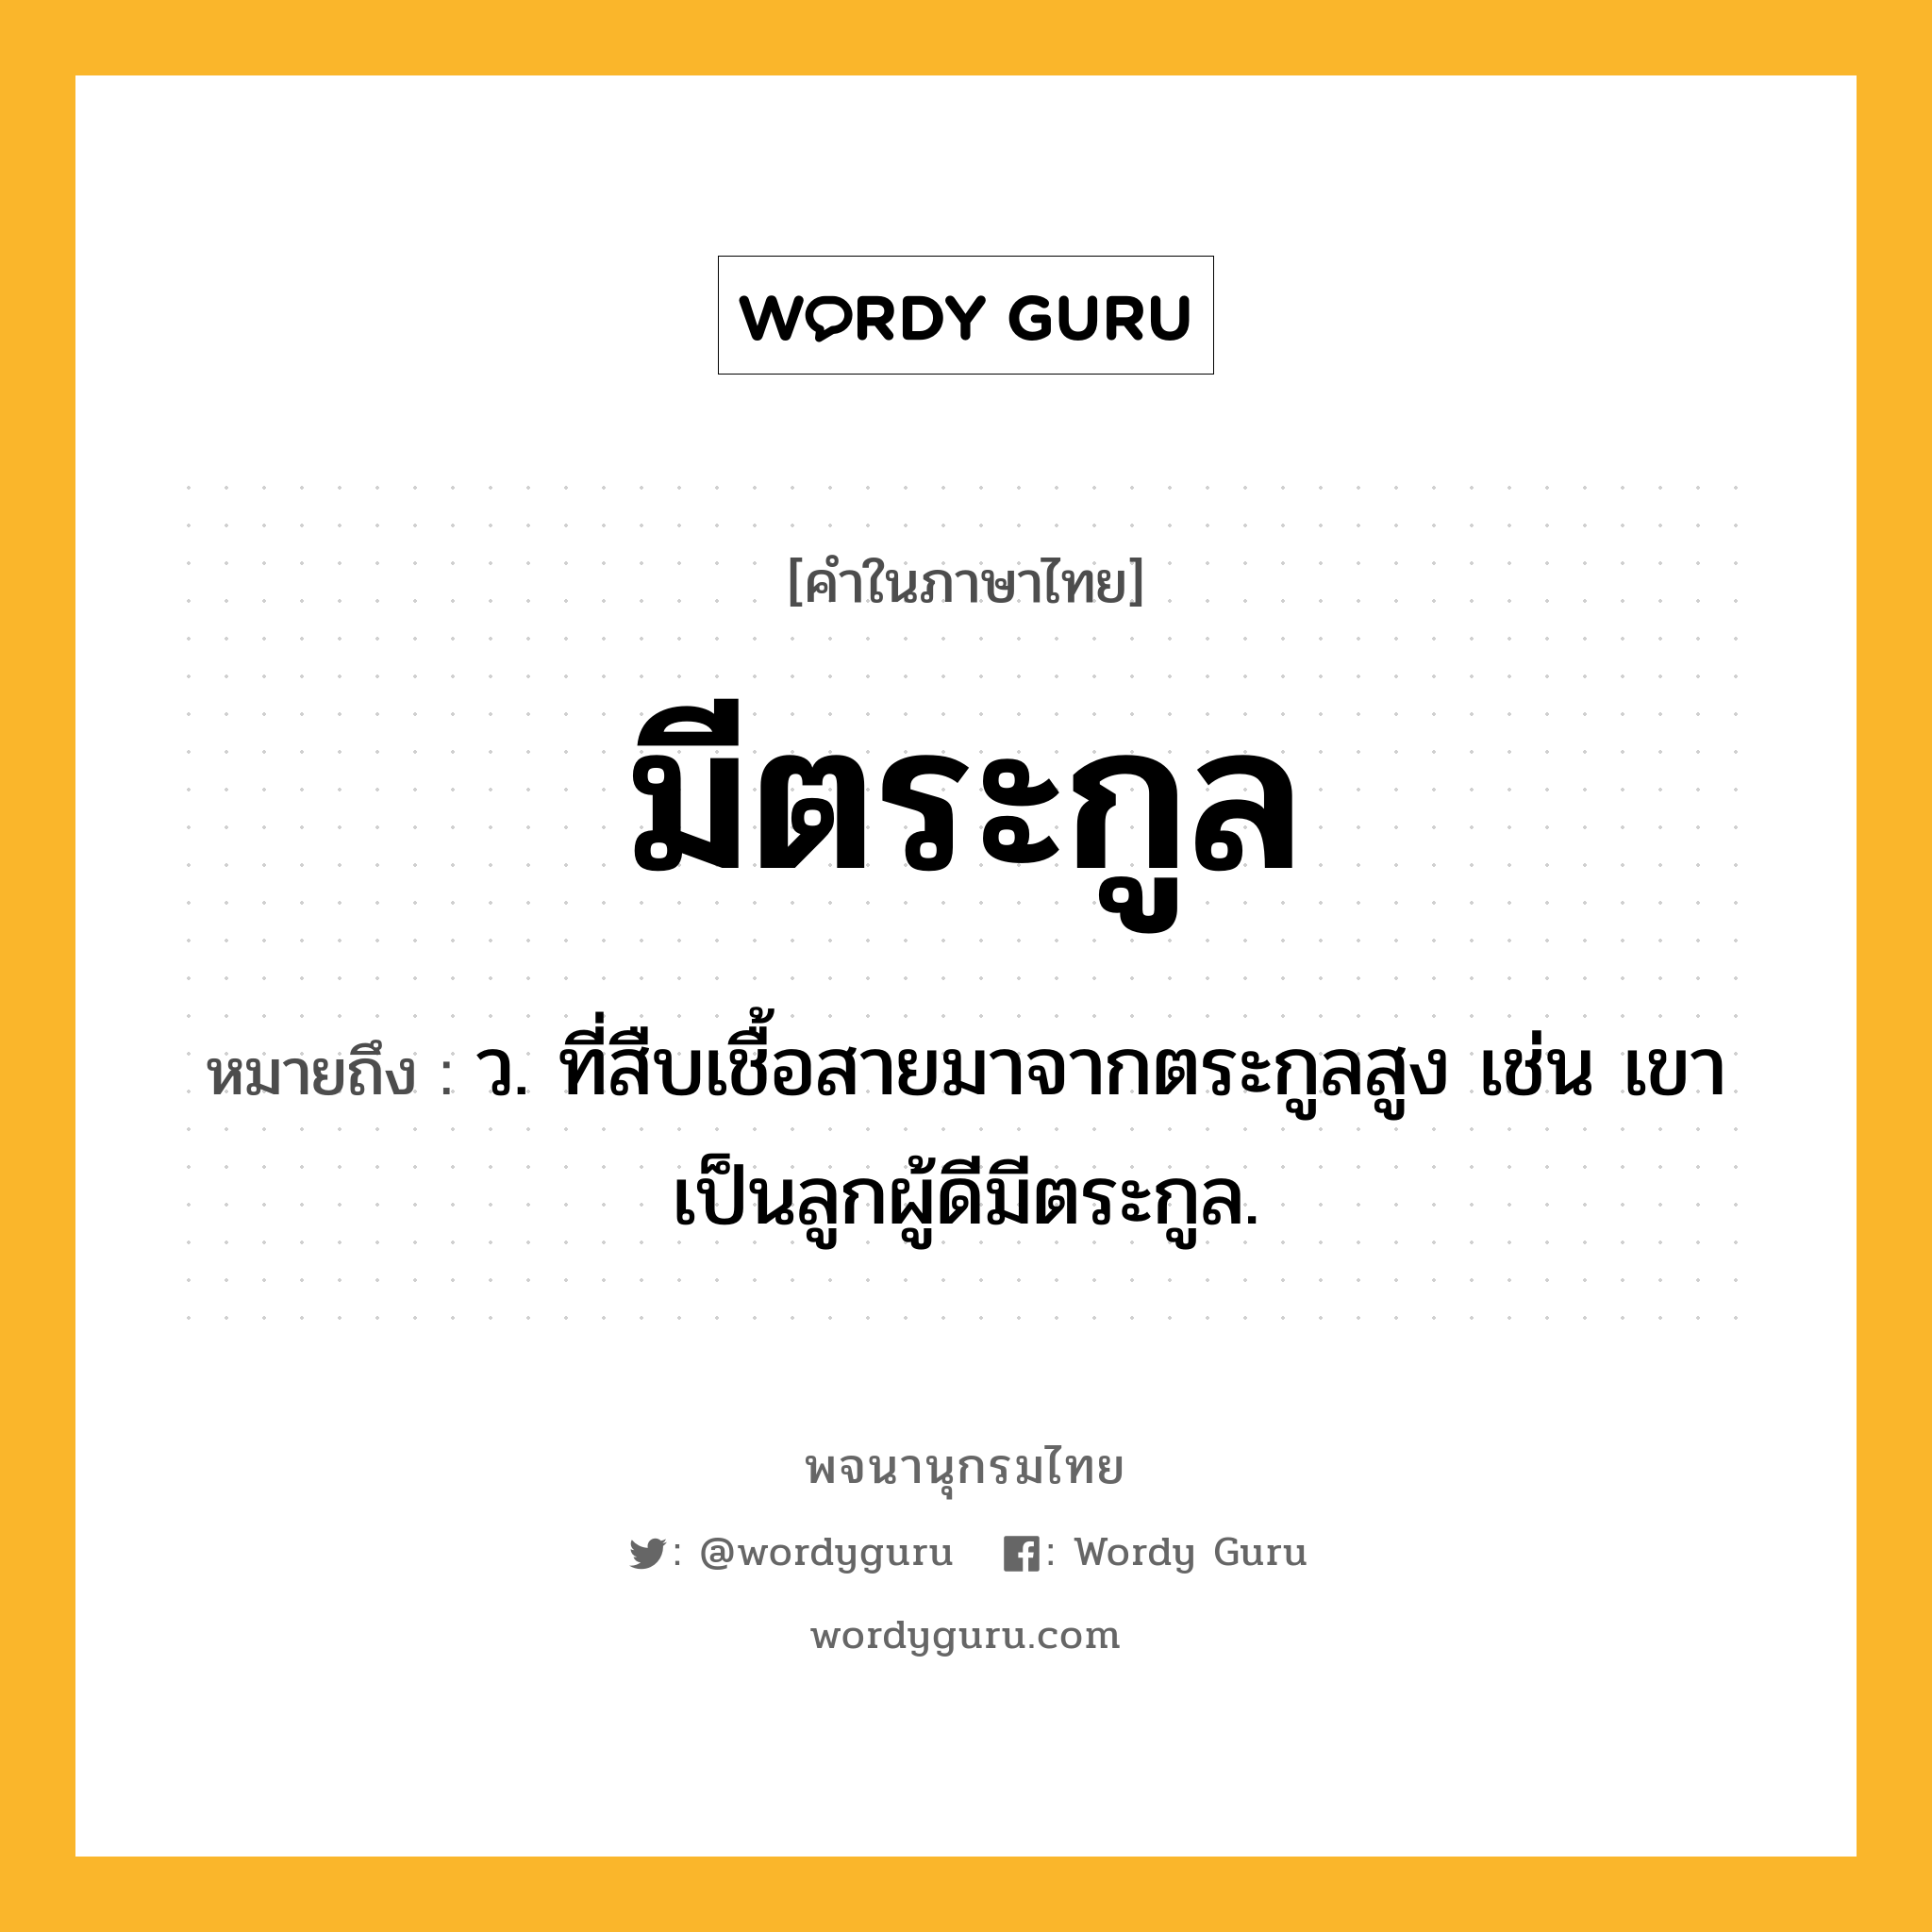 มีตระกูล หมายถึงอะไร?, คำในภาษาไทย มีตระกูล หมายถึง ว. ที่สืบเชื้อสายมาจากตระกูลสูง เช่น เขาเป็นลูกผู้ดีมีตระกูล.